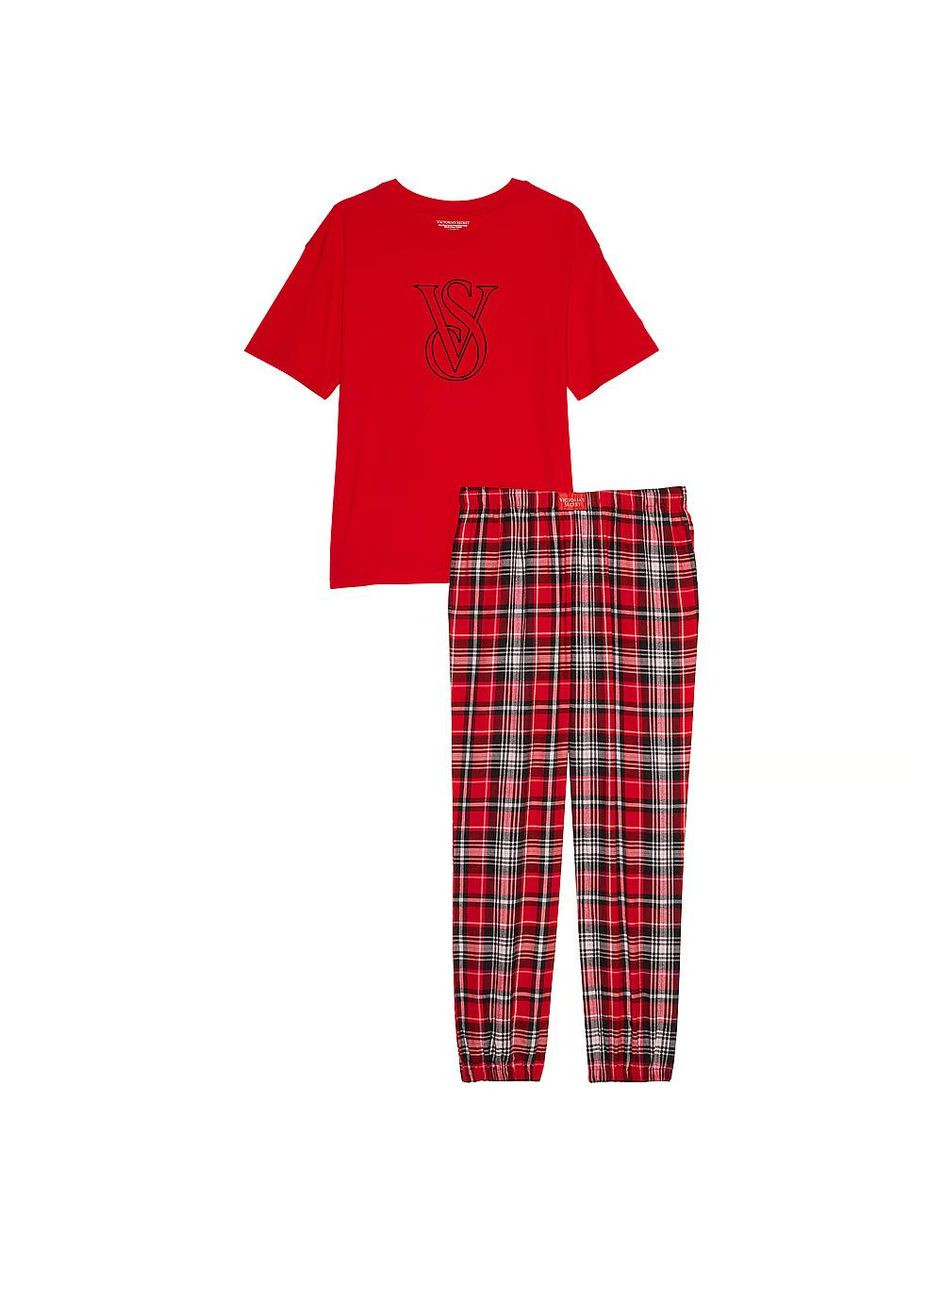 Красная всесезон пижама - футболка и фланелевые штаны футболка + брюки Victoria's Secret